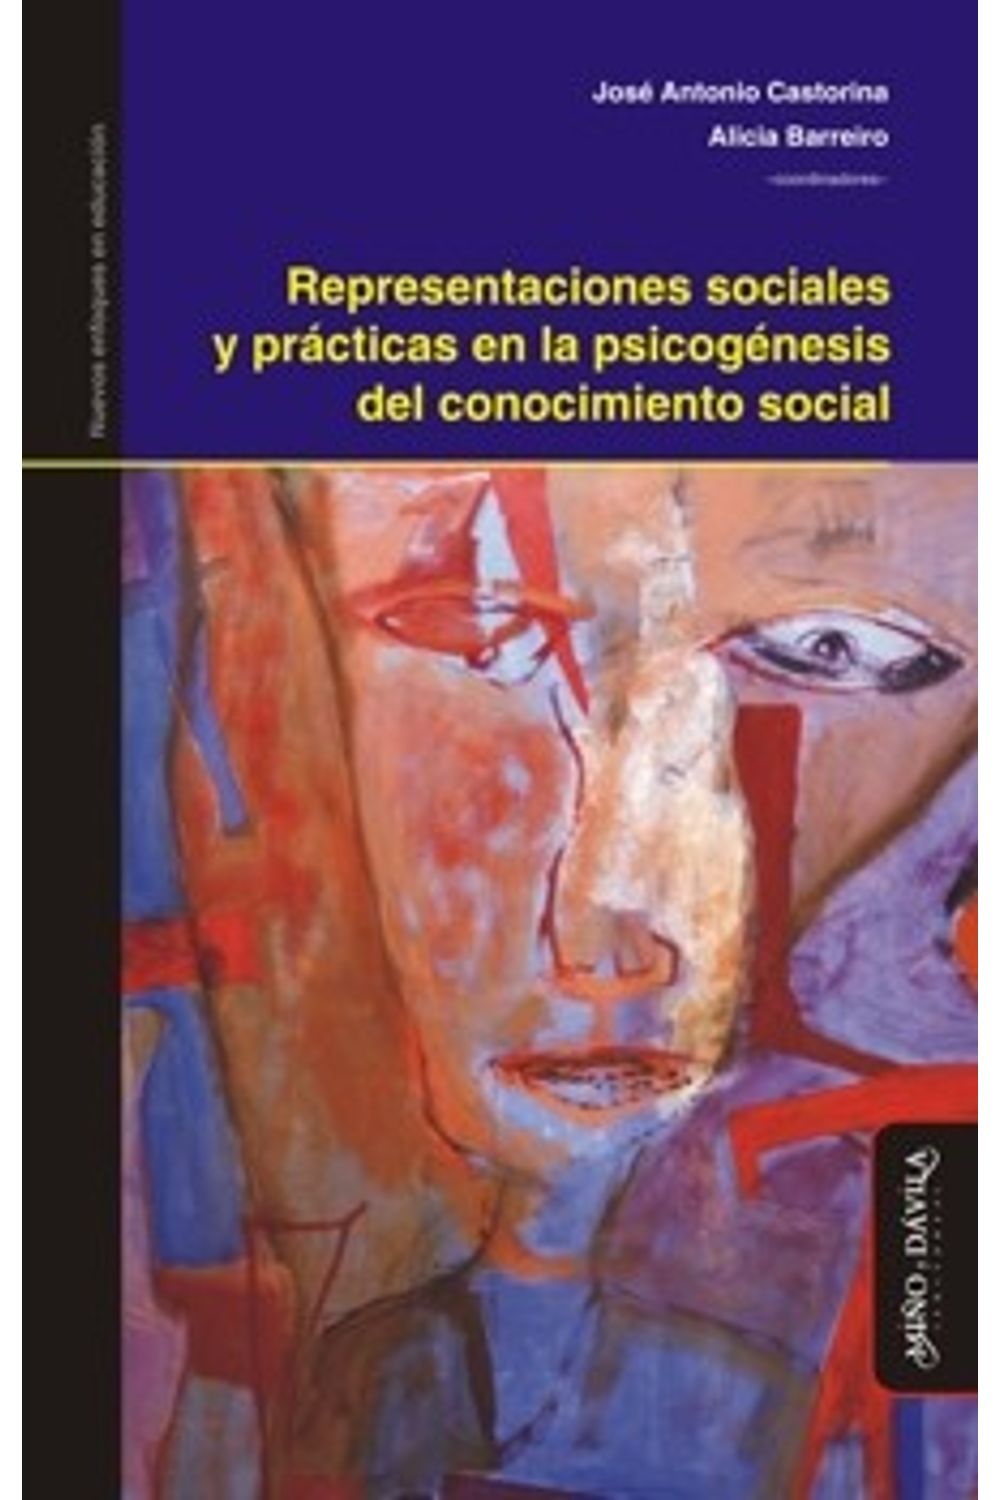 bm-representaciones-sociales-y-practicas-en-la-psicogenesis-del-conocimiento-social-mino-y-davila-editores-9788415295556